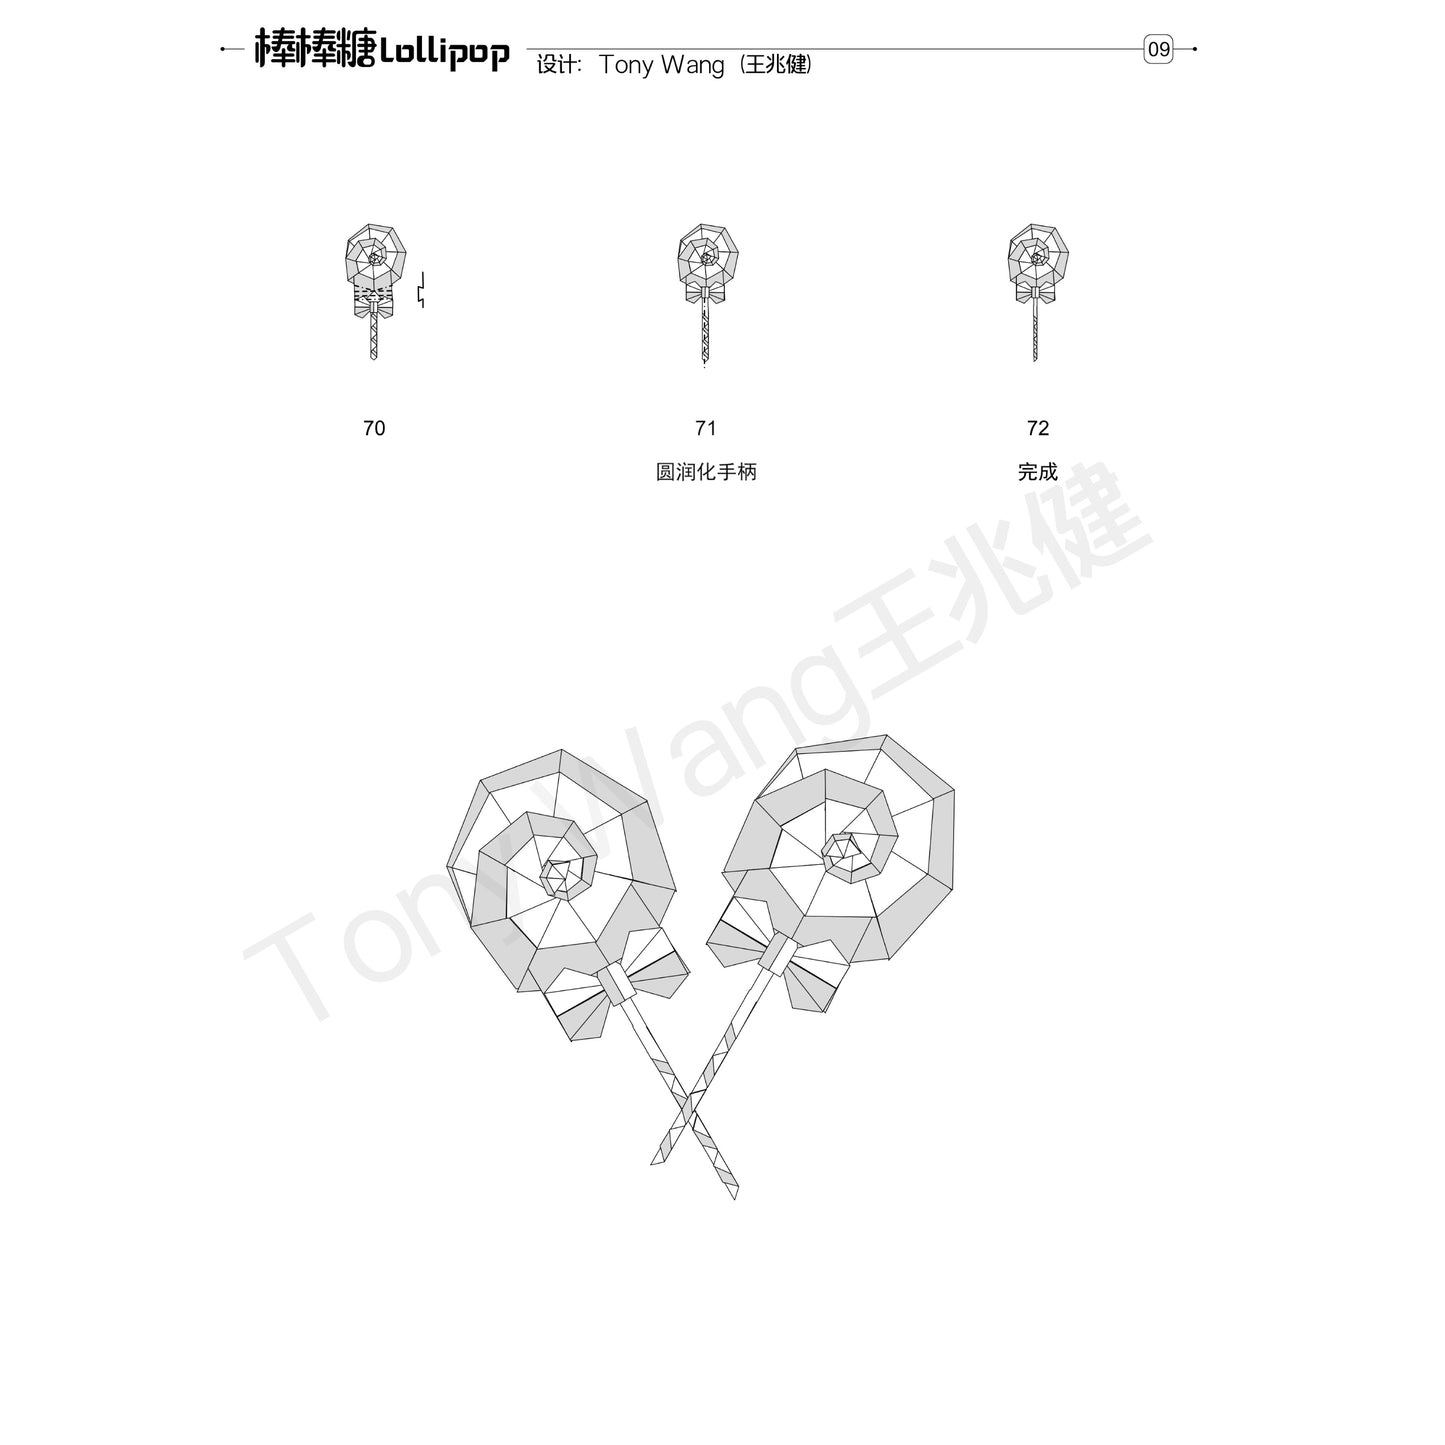 Lollipop diagrams by Tony wang 【pdf file】